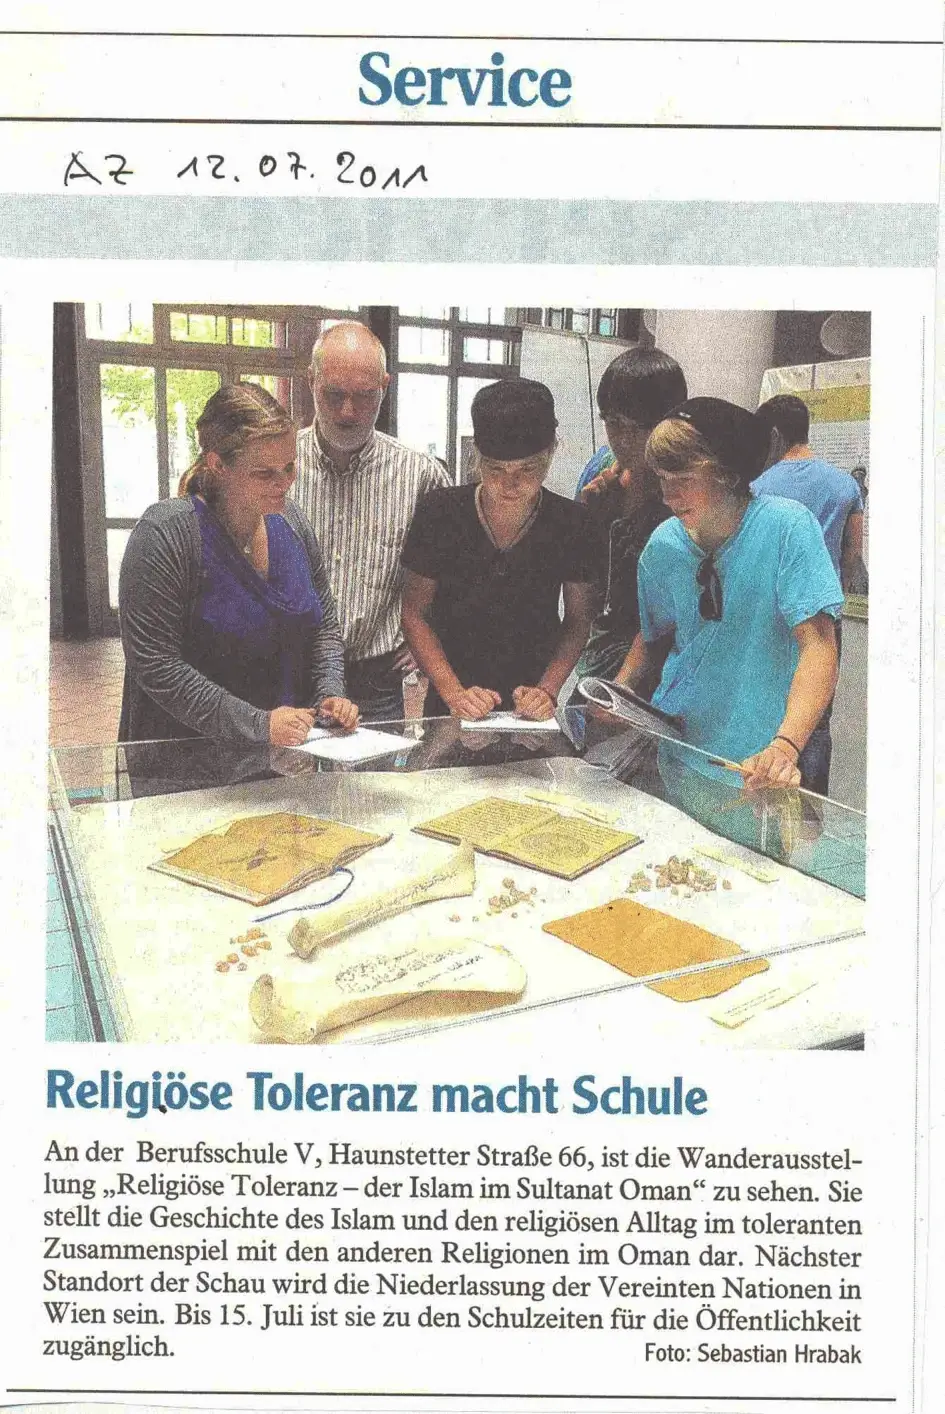 مقال جريدة ألجمينه تسايتونج (بالألمانية) حول معرض المدرسة المهنية، أوجسبورج، ألمانيا - 2011